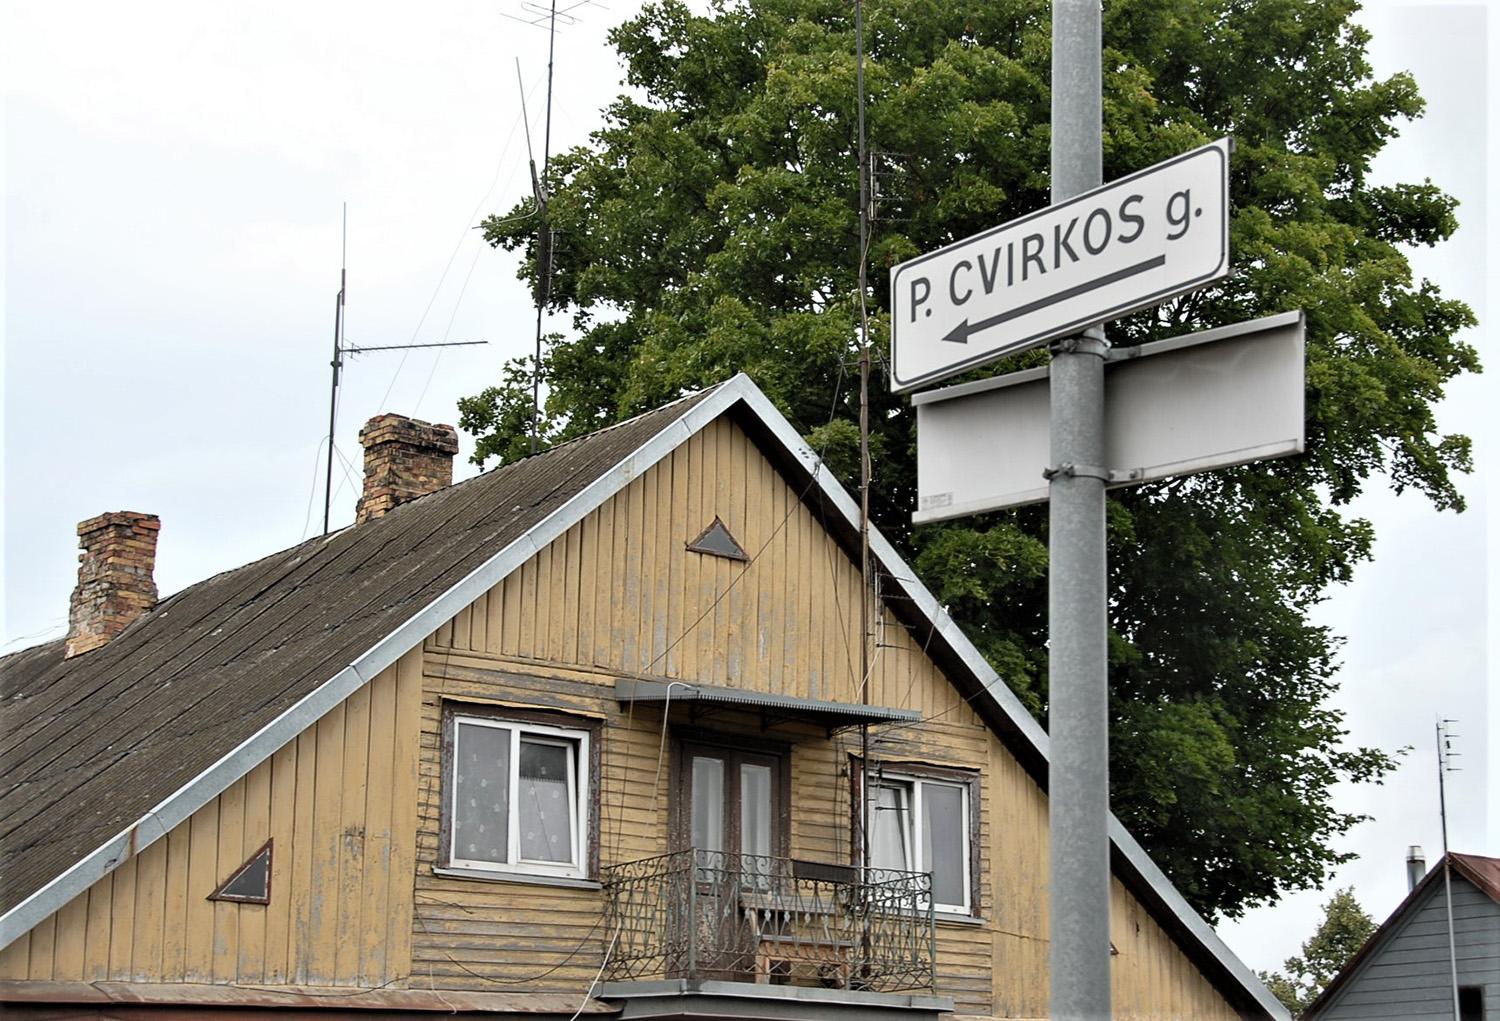 P. Cvirkos gatvės pavadinimą nurodyta šalinti / Galbūt ateityje ir Ukmergėje esanti P. Cvirkos gatvė turės kitą pavadinimą.